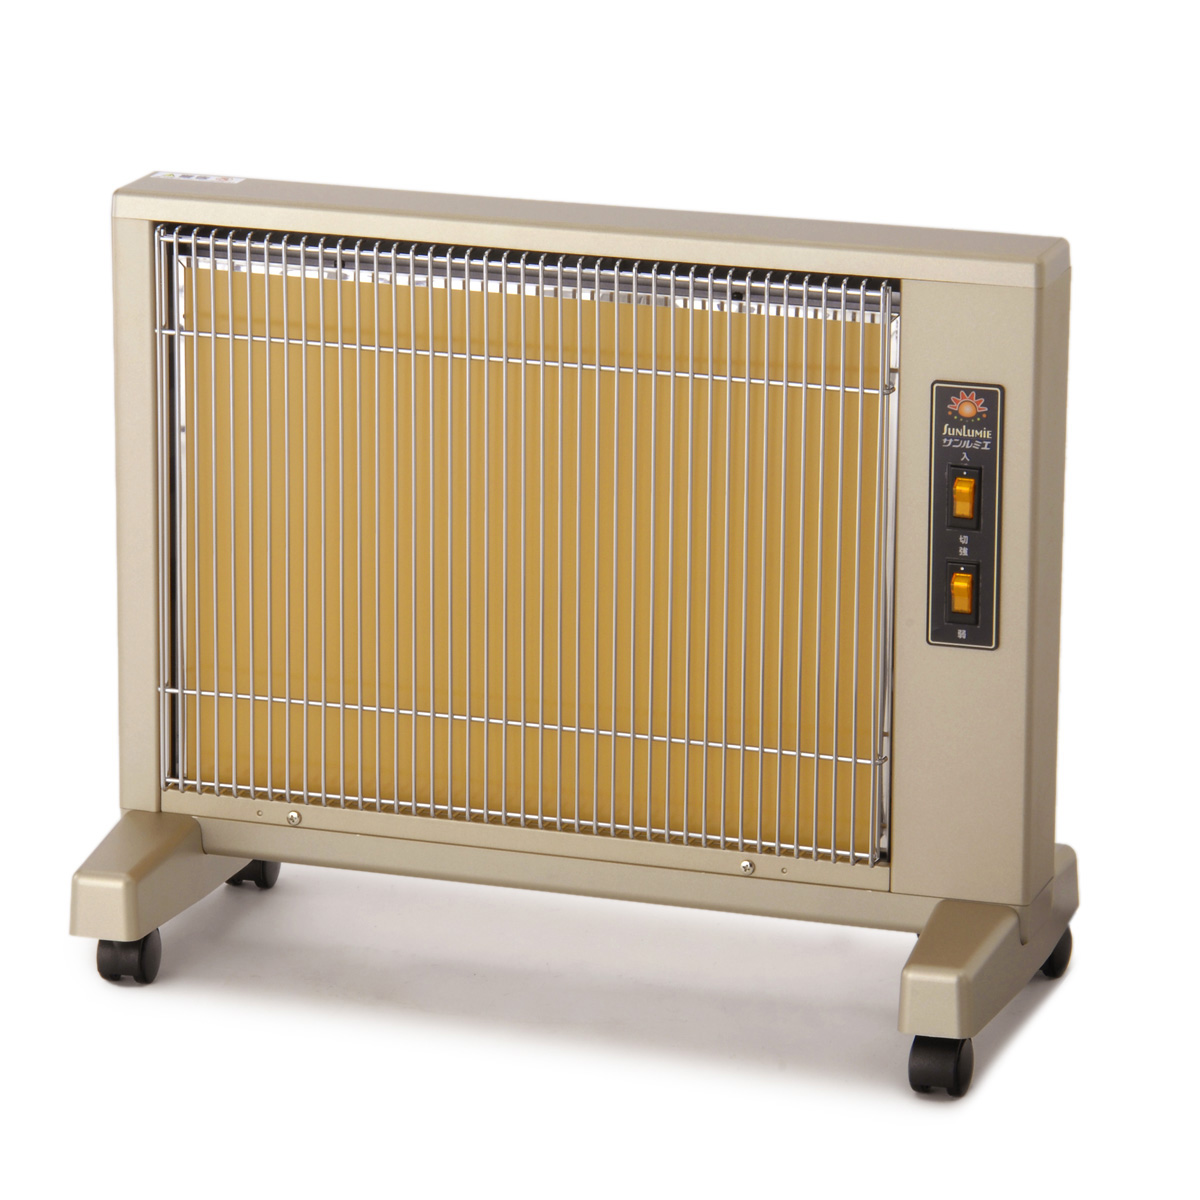 冷暖房/空調 電気ヒーター 遠赤外線暖房器 サンルミエキュート 3年保証 2台セット - QVC.jp